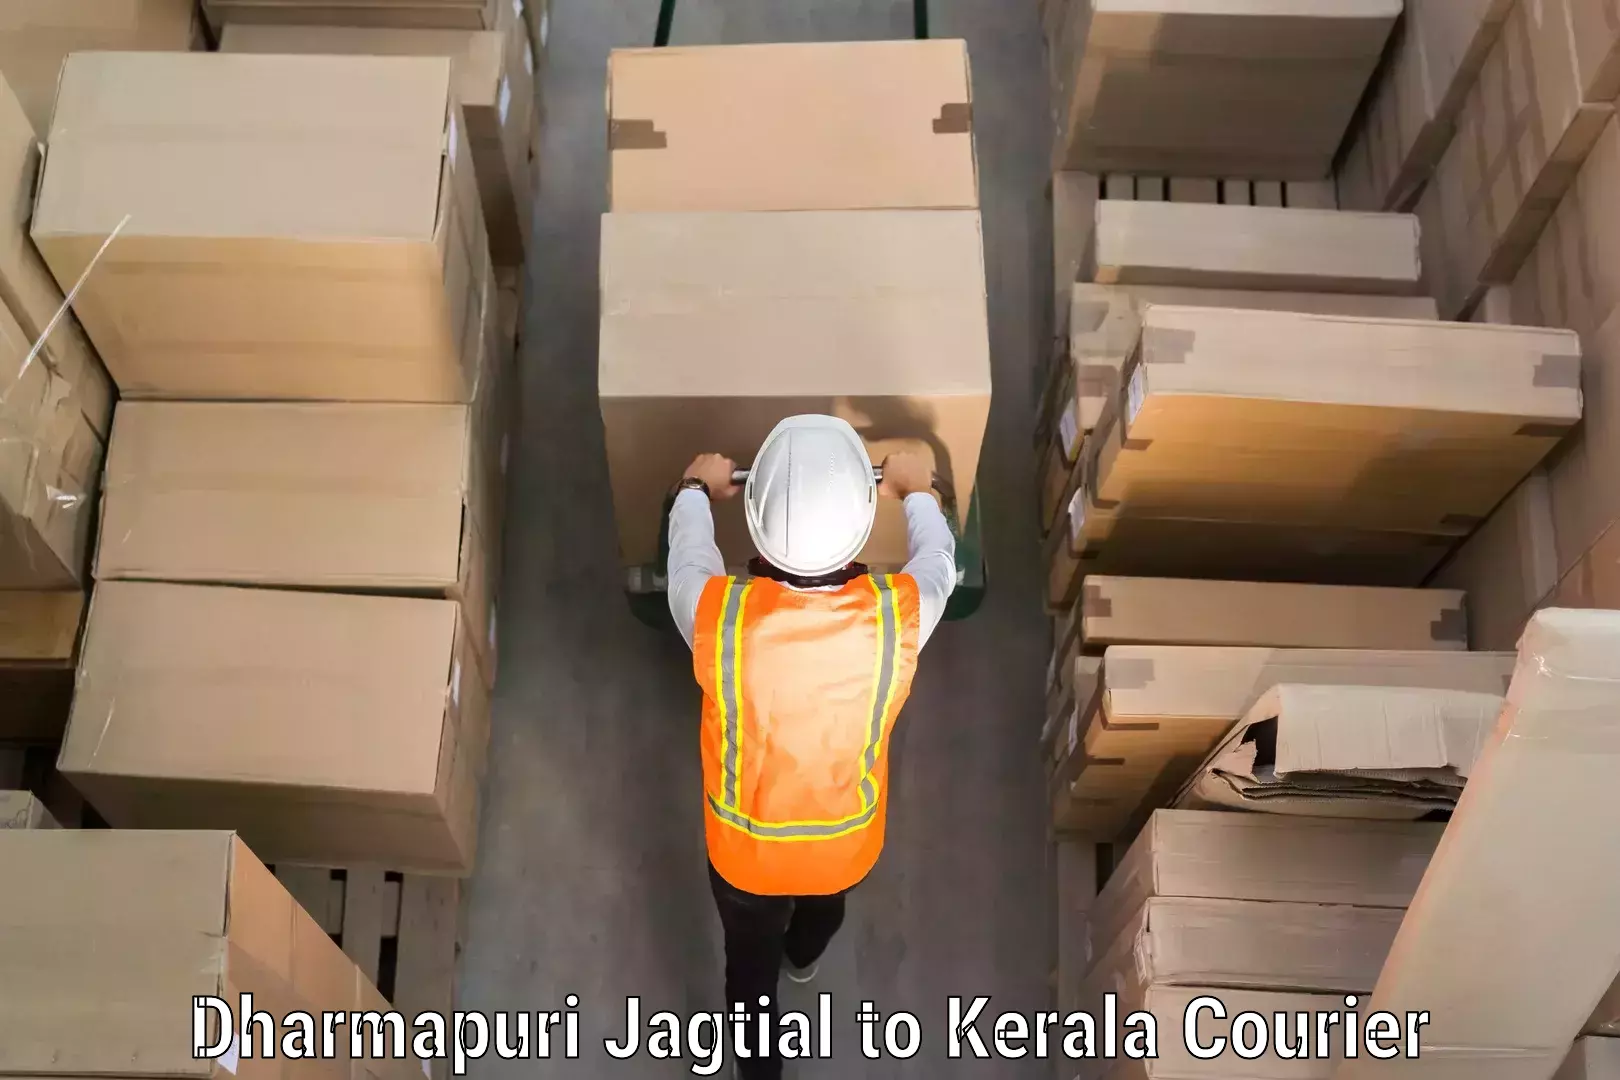 Global baggage shipping in Dharmapuri Jagtial to Kerala